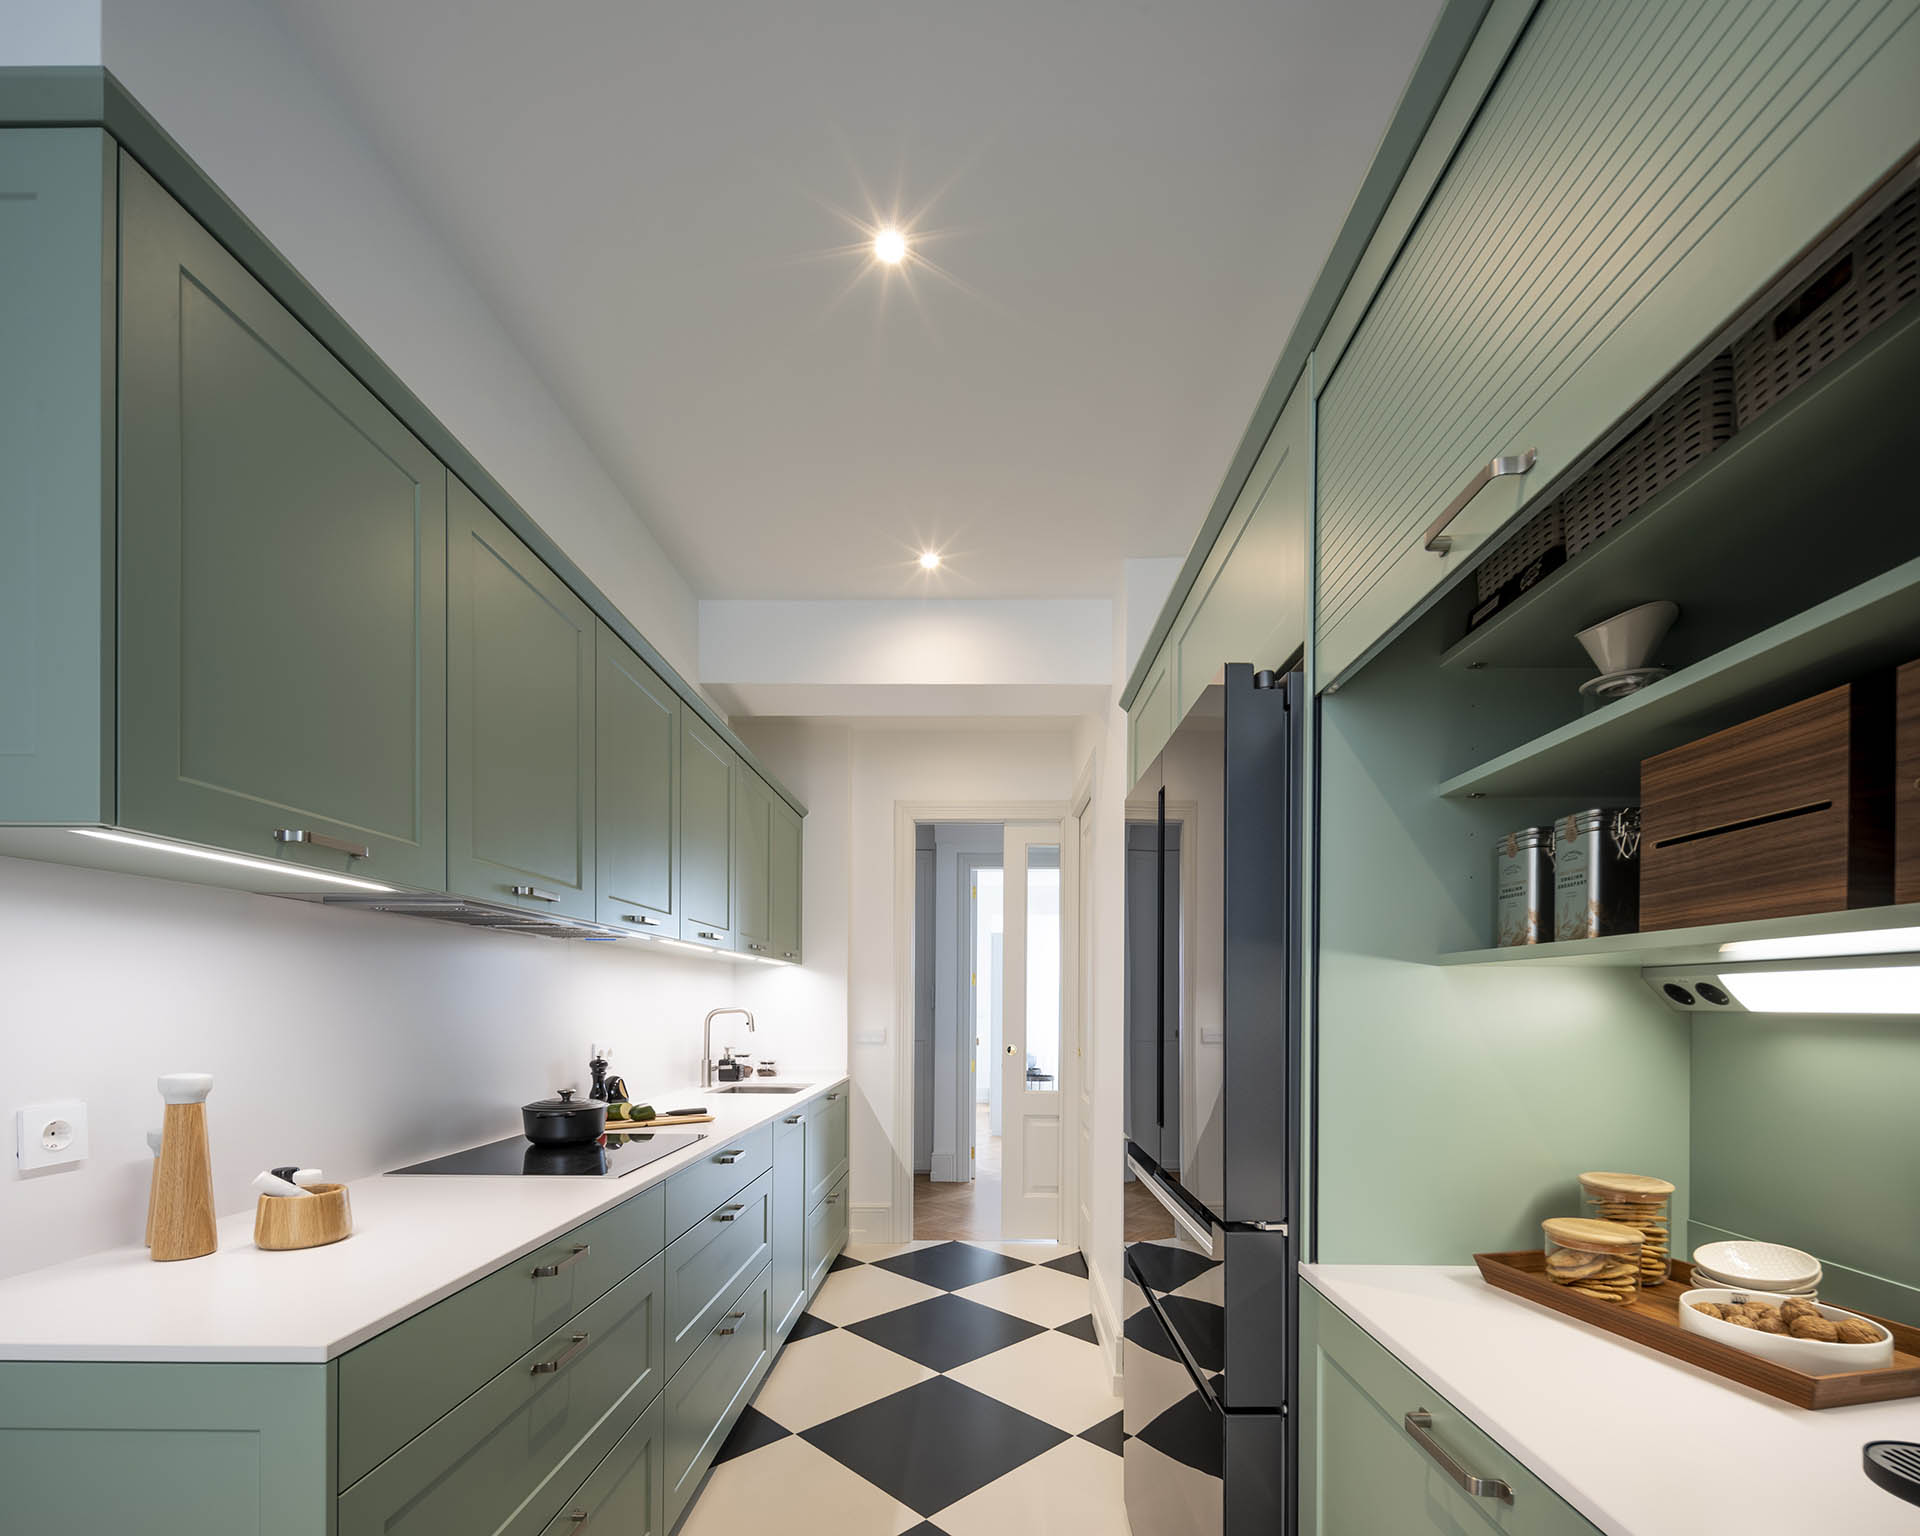 Distribución en paralelo en la cocina verde clásica diseñada por Santos en Santiago Interiores